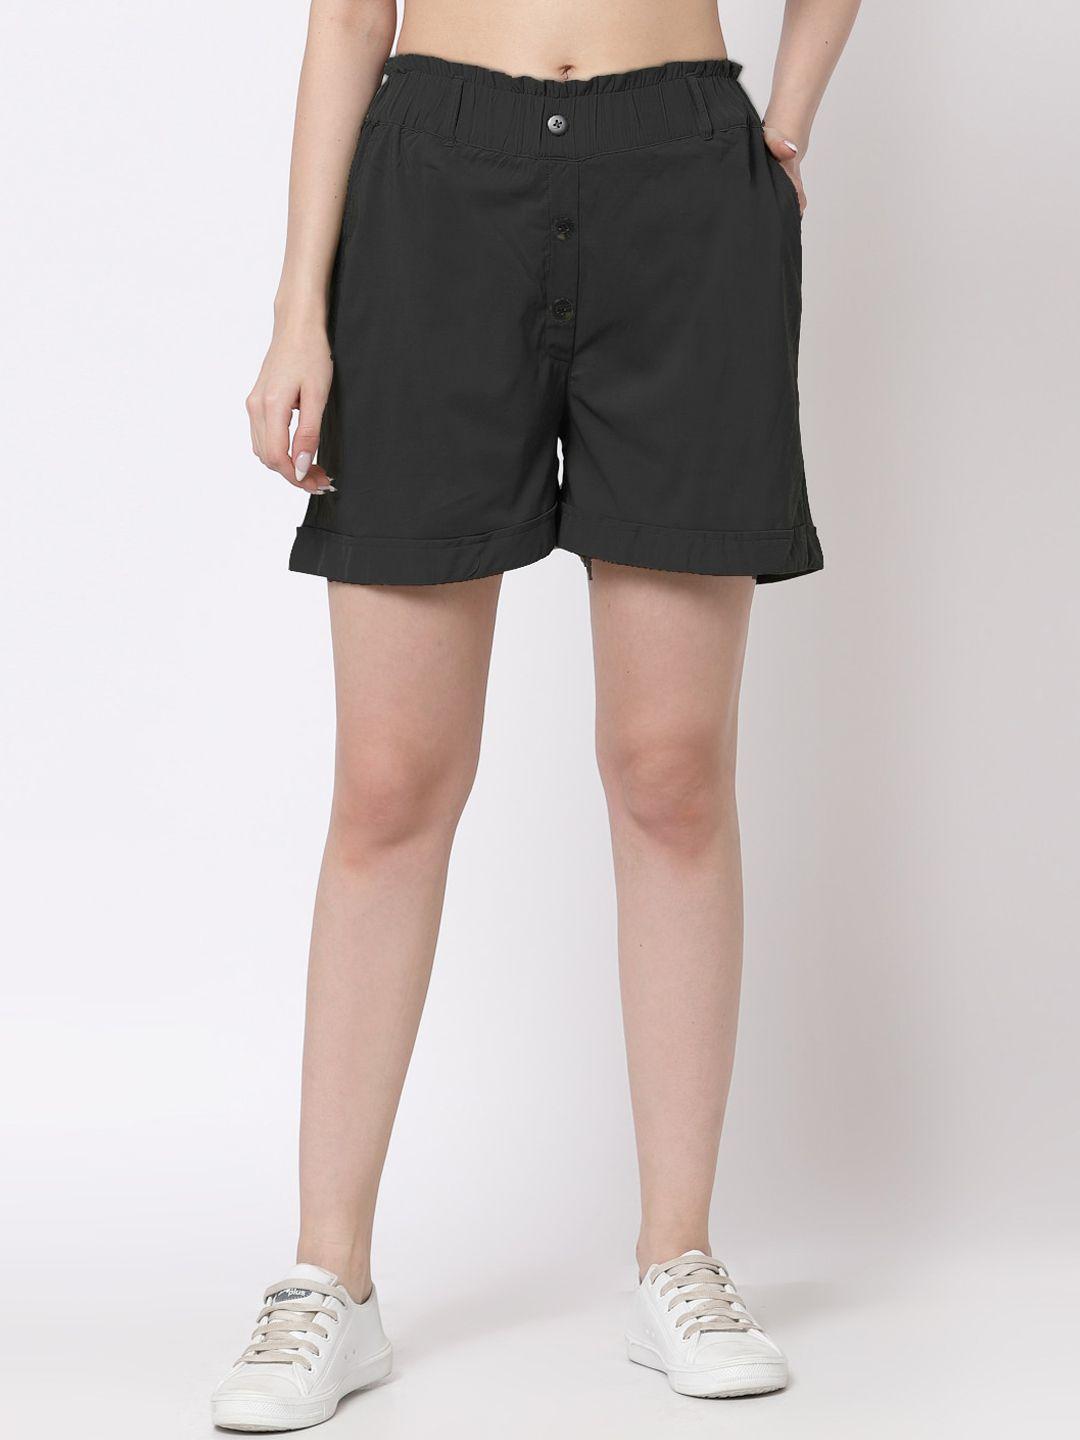 KLOTTHE Women Black Solid Regular Shorts